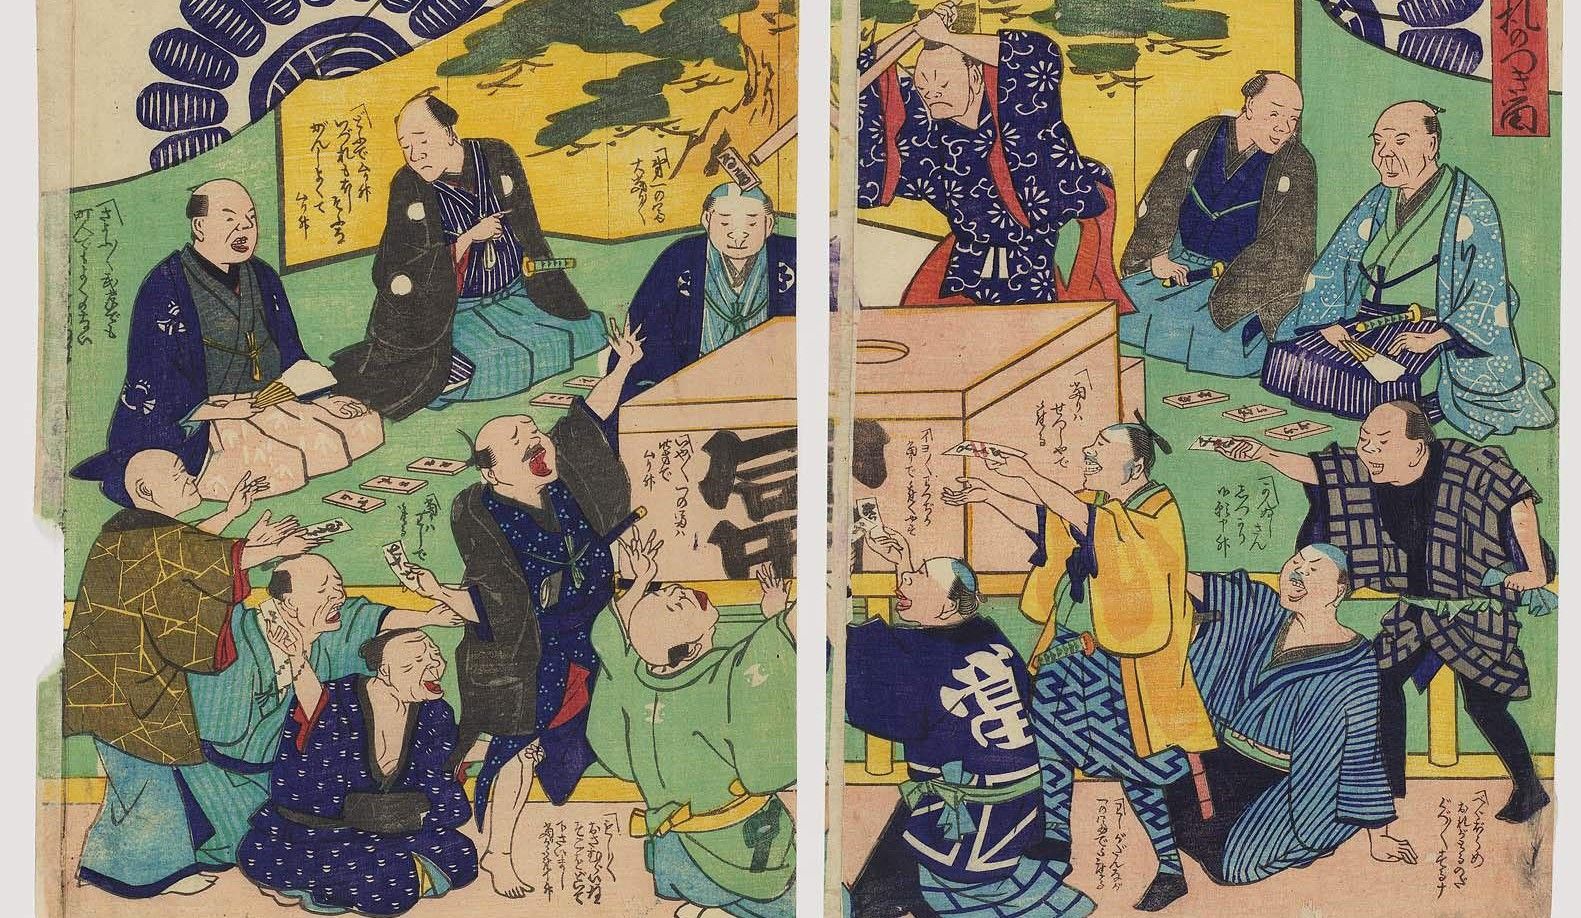 江戸幕府が唯一公認した｢人気の賭け事｣その正体 碁や将棋､双六といった勝負事での賭けは厳禁